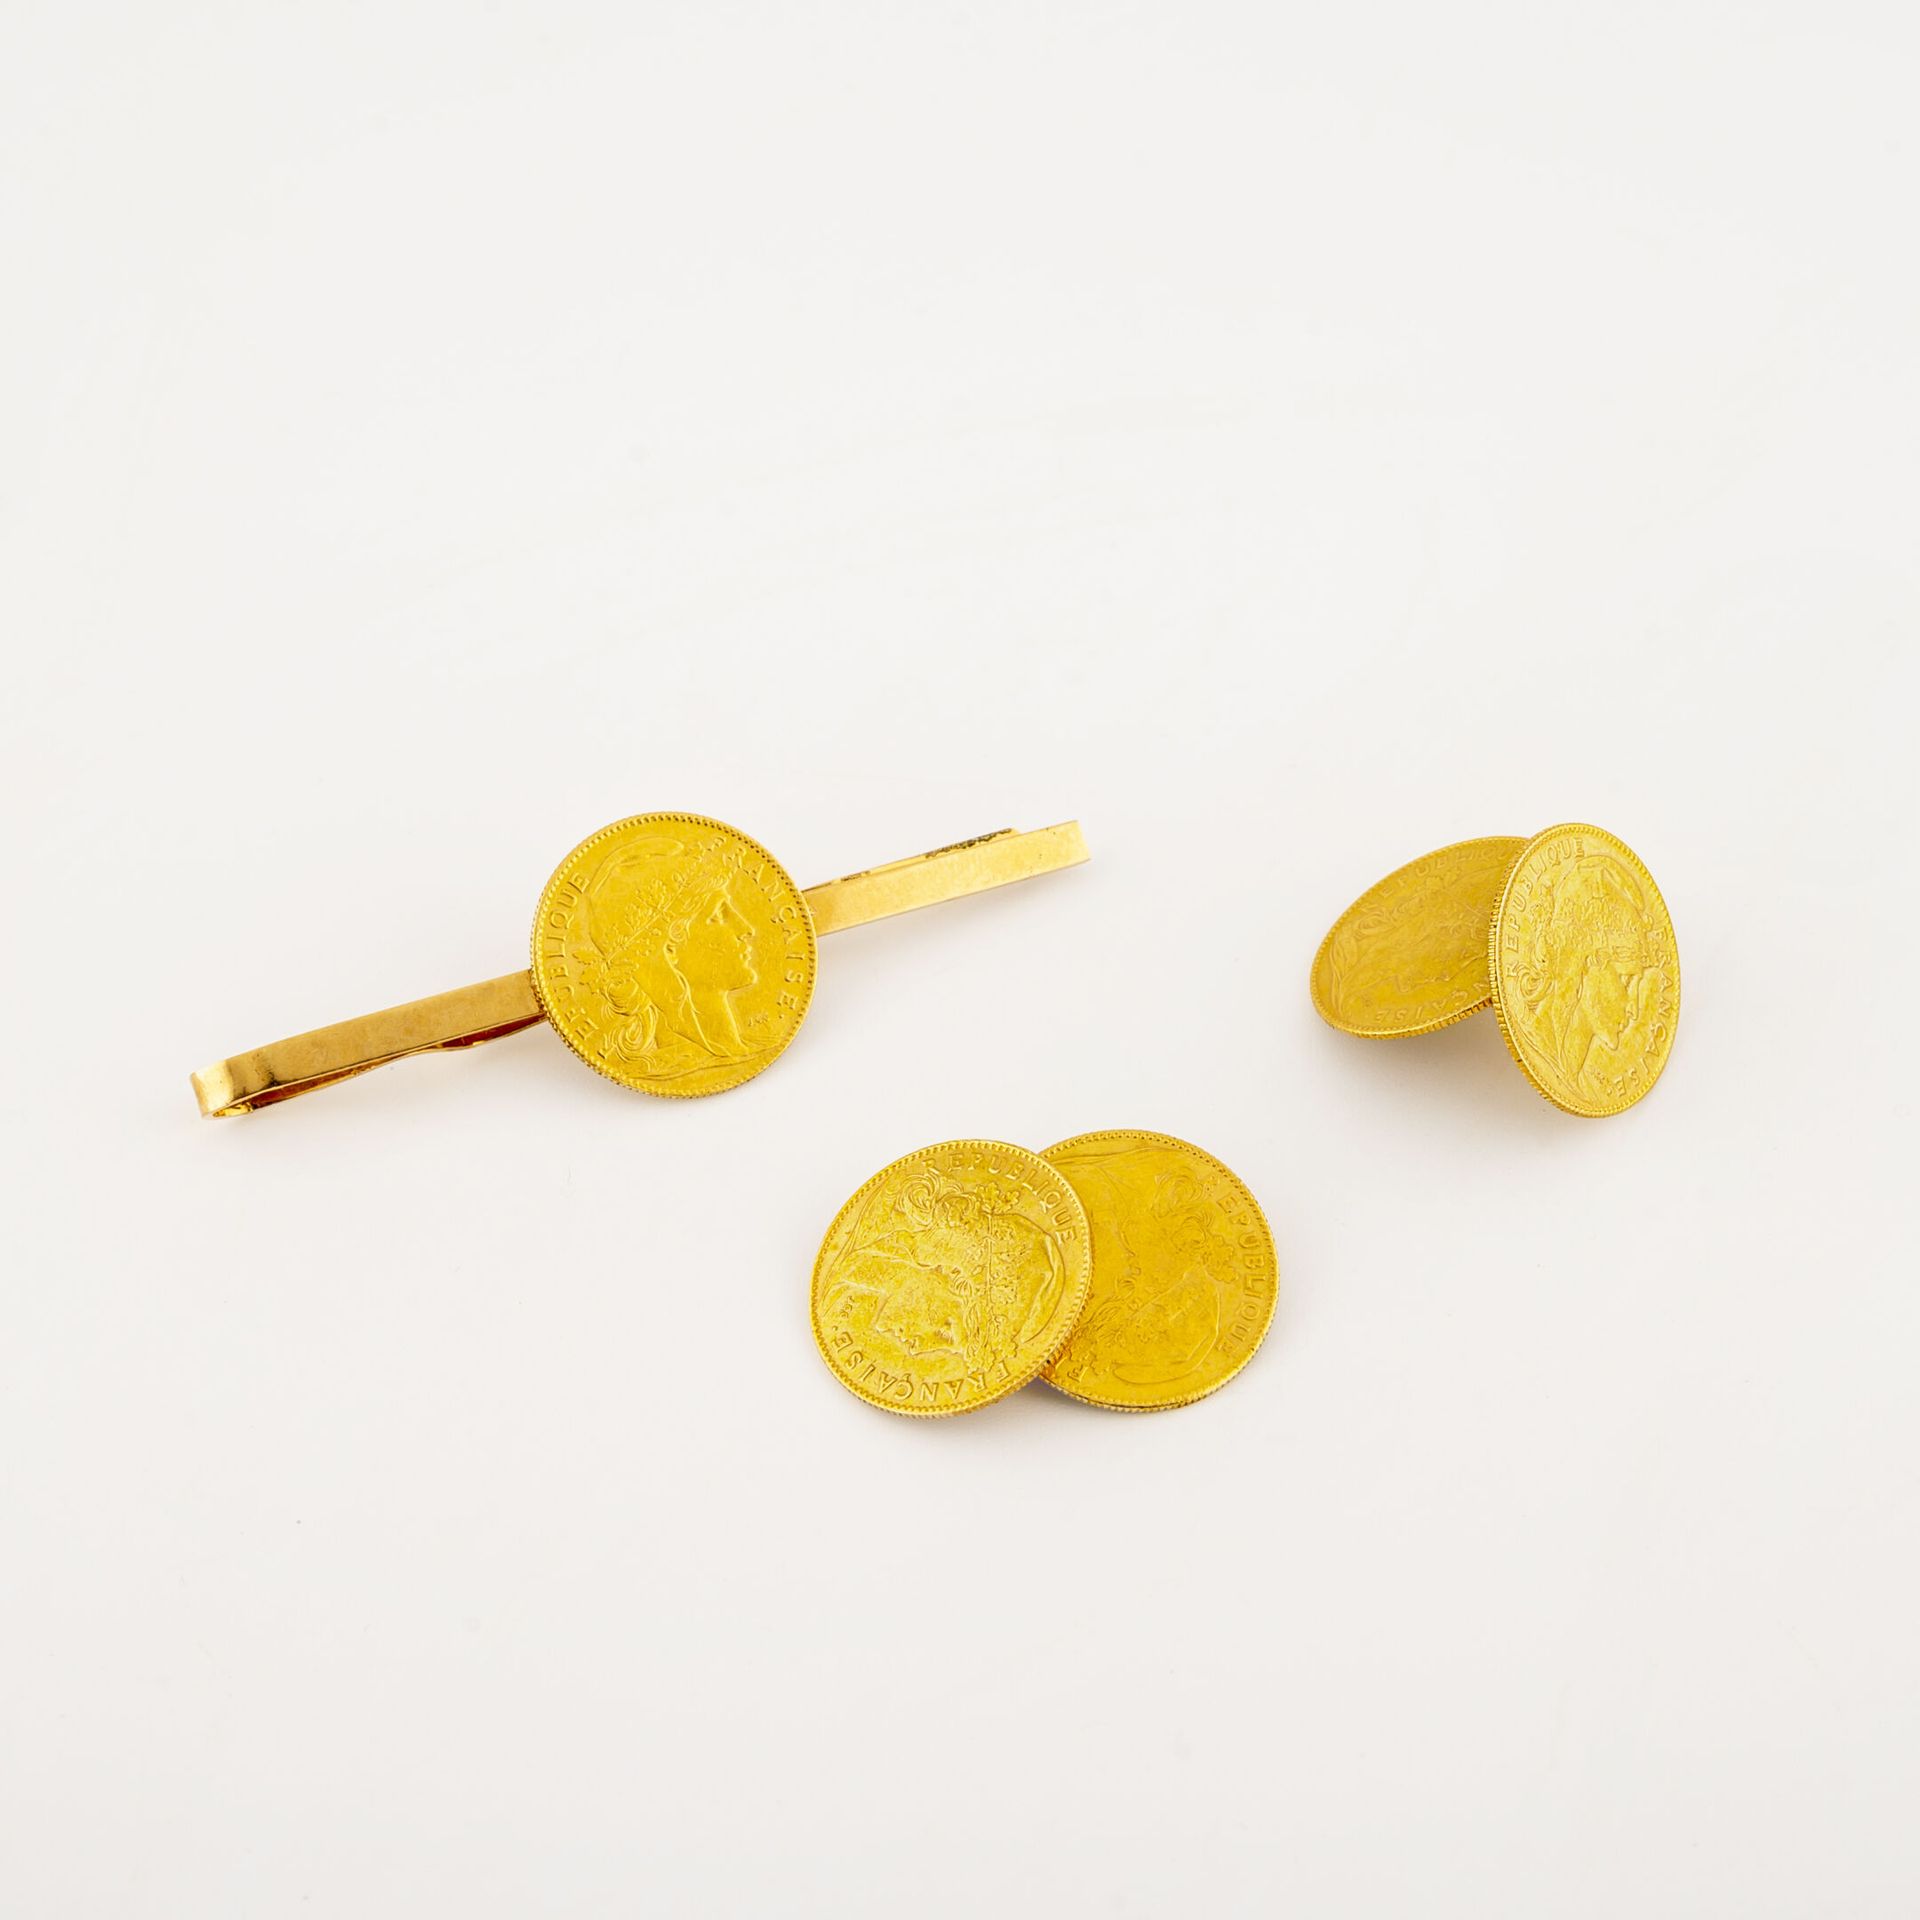 Null Par de gemelos de oro amarillo (750) con monedas de oro de 10 francos. 

Pe&hellip;